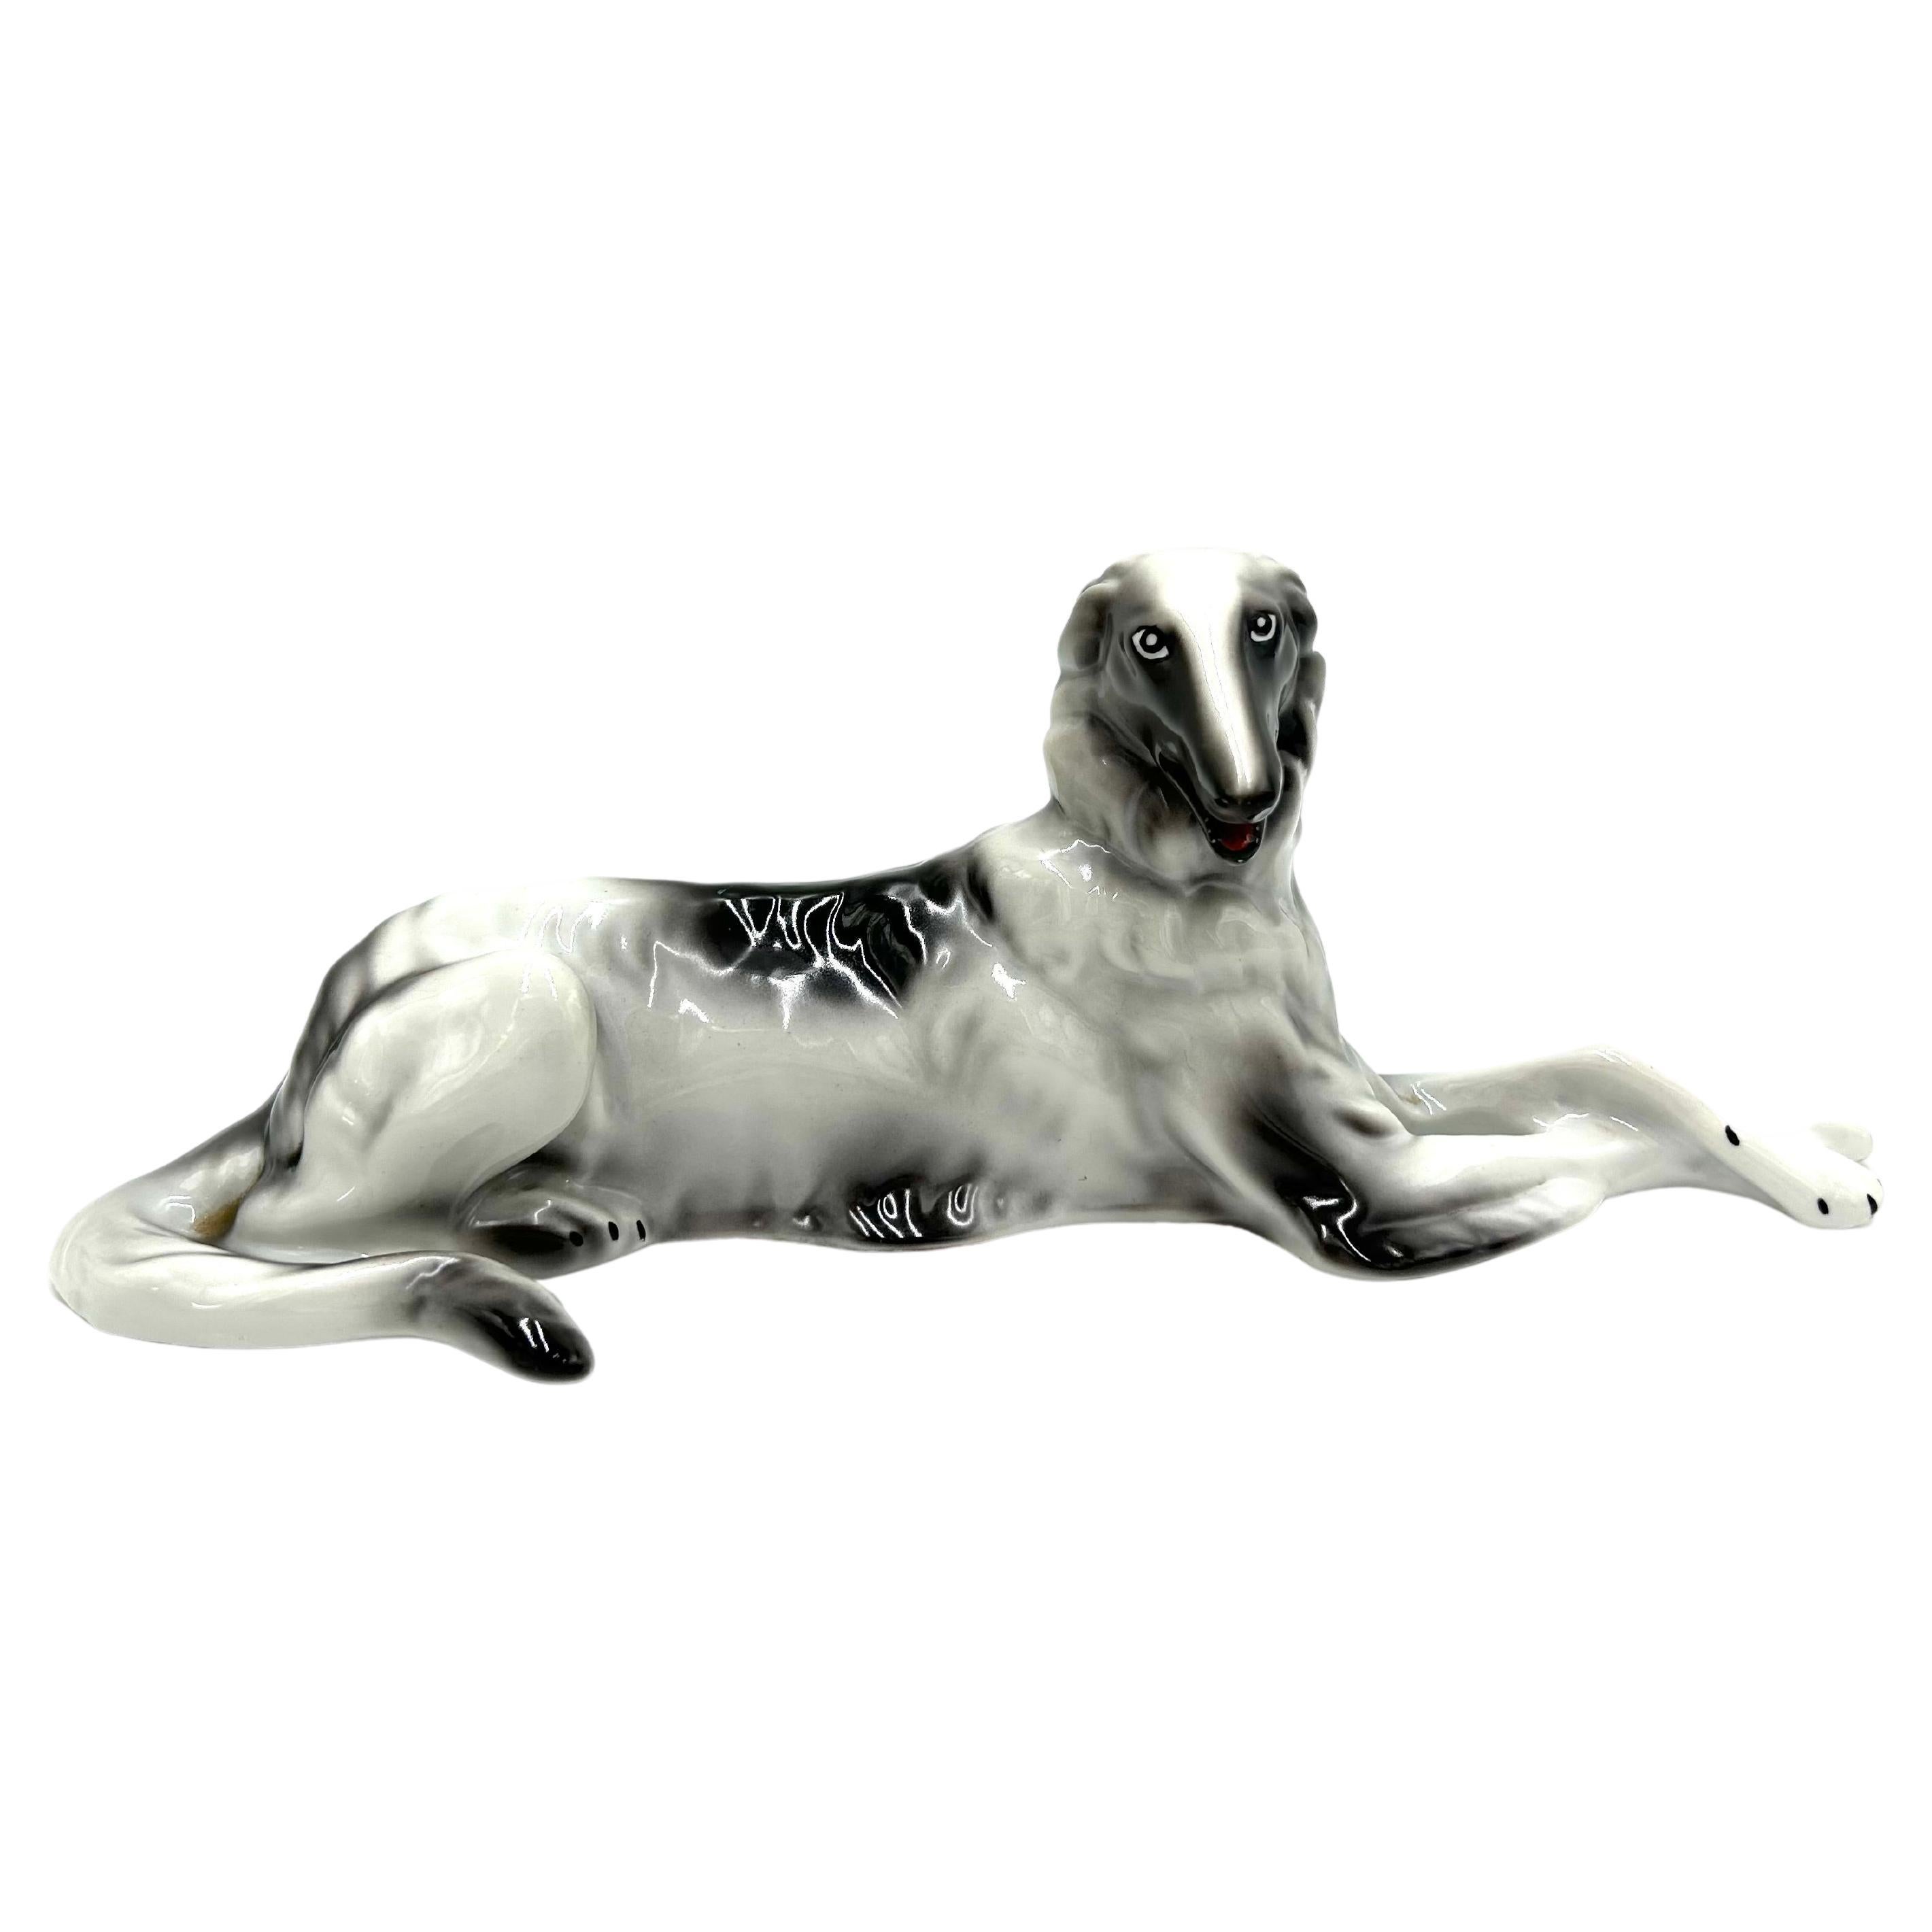 Porcelain figurine of Russian Borzoi Greyhound, Wałbrzych, 1960s.